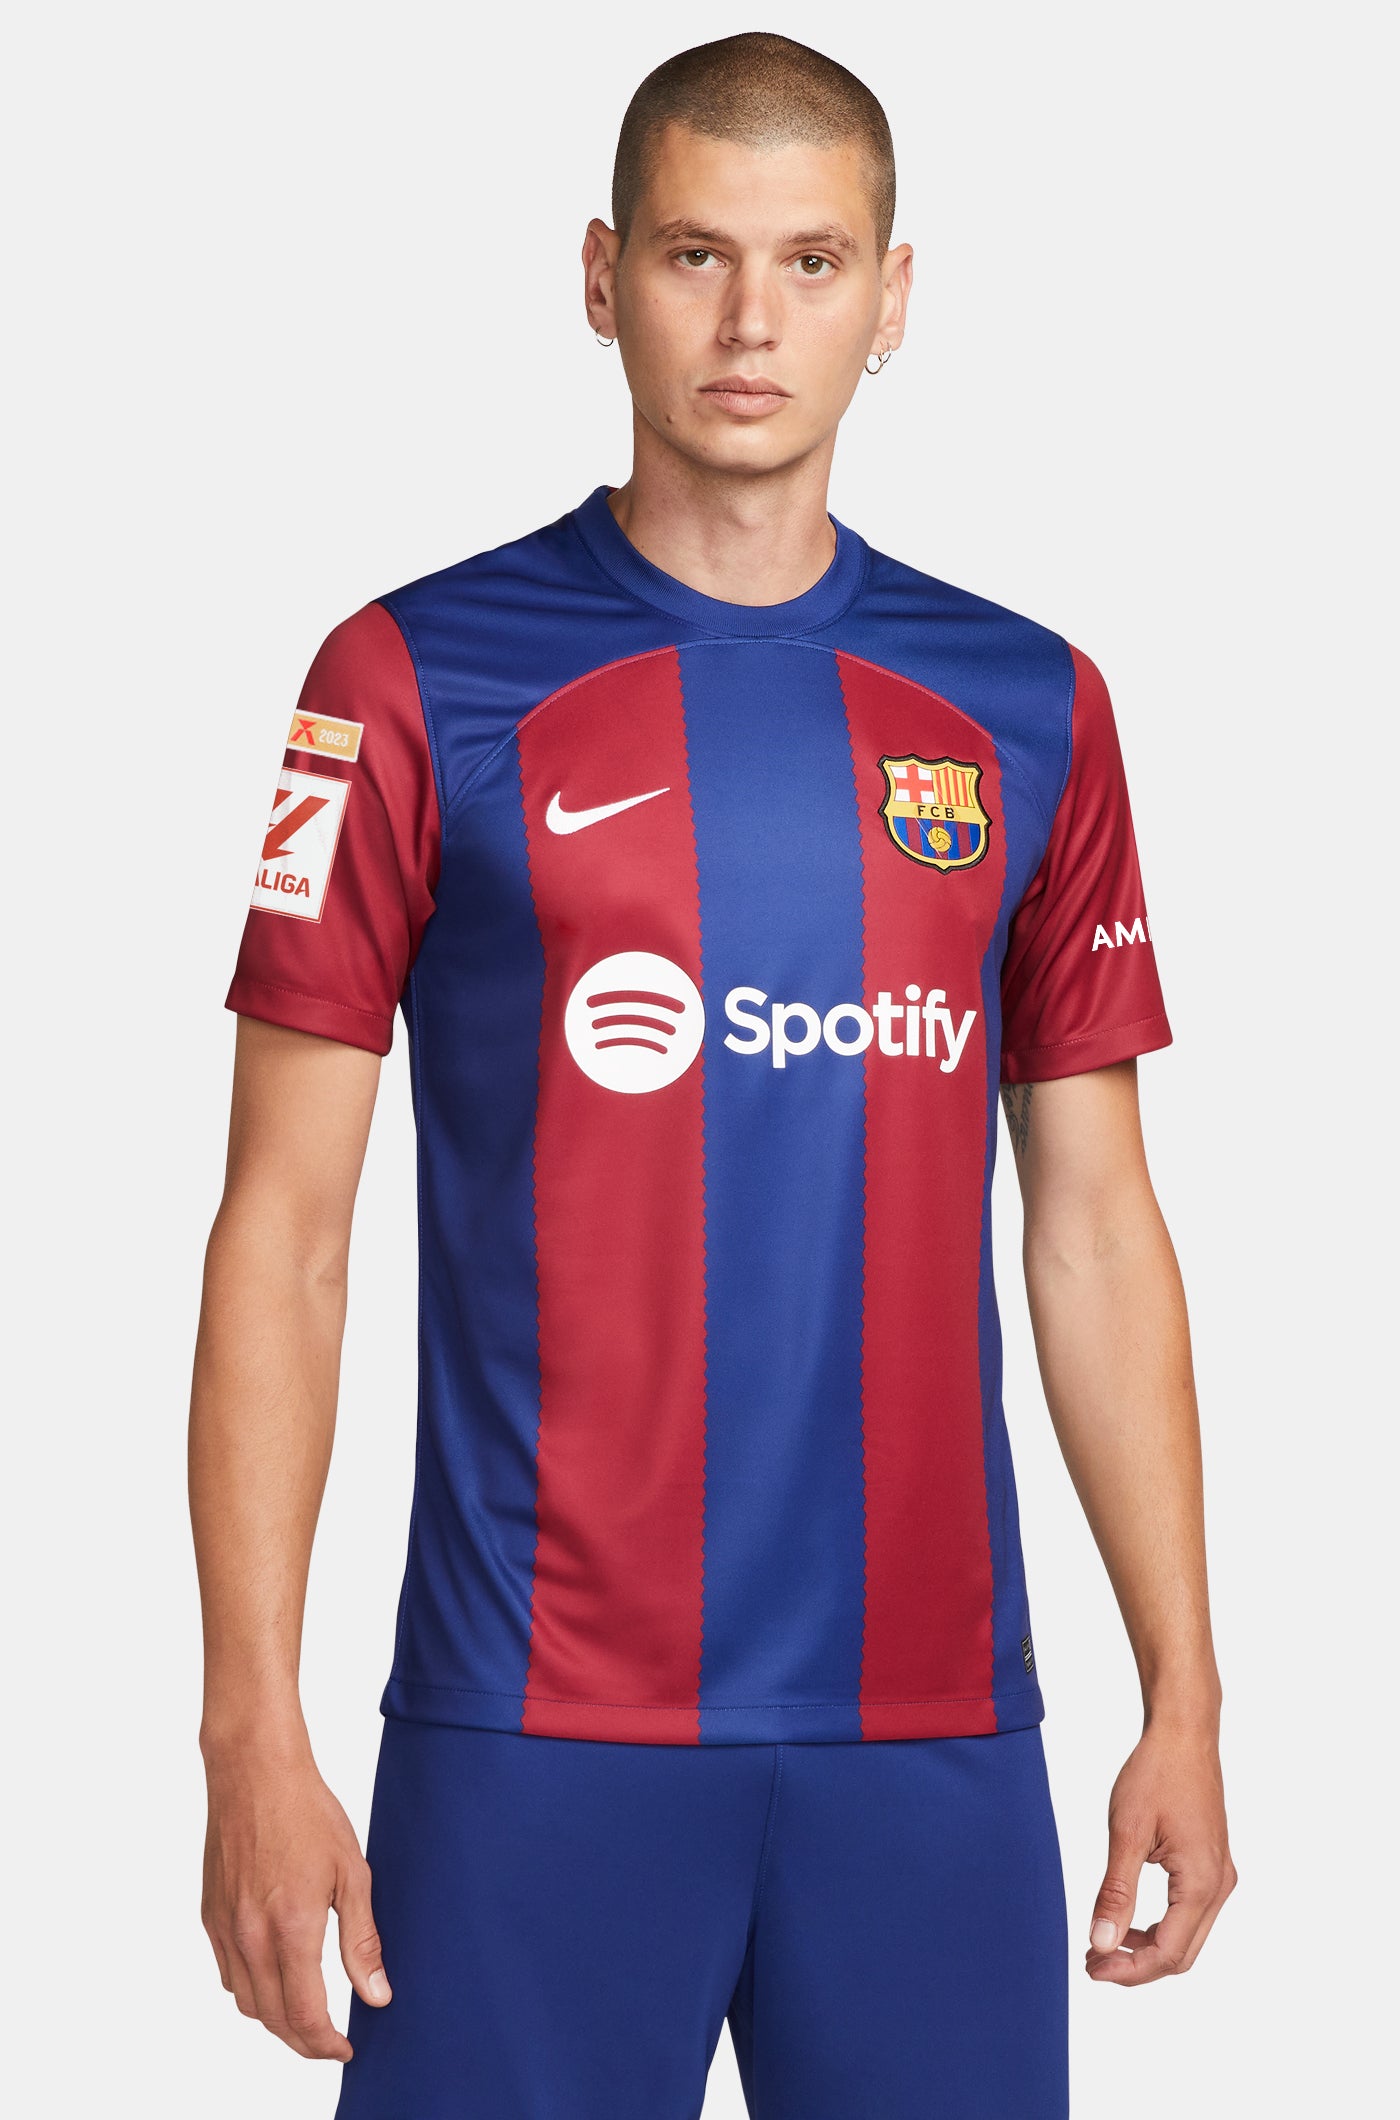 LFP FC Barcelona home shirt 23/24  - S. ROBERTO